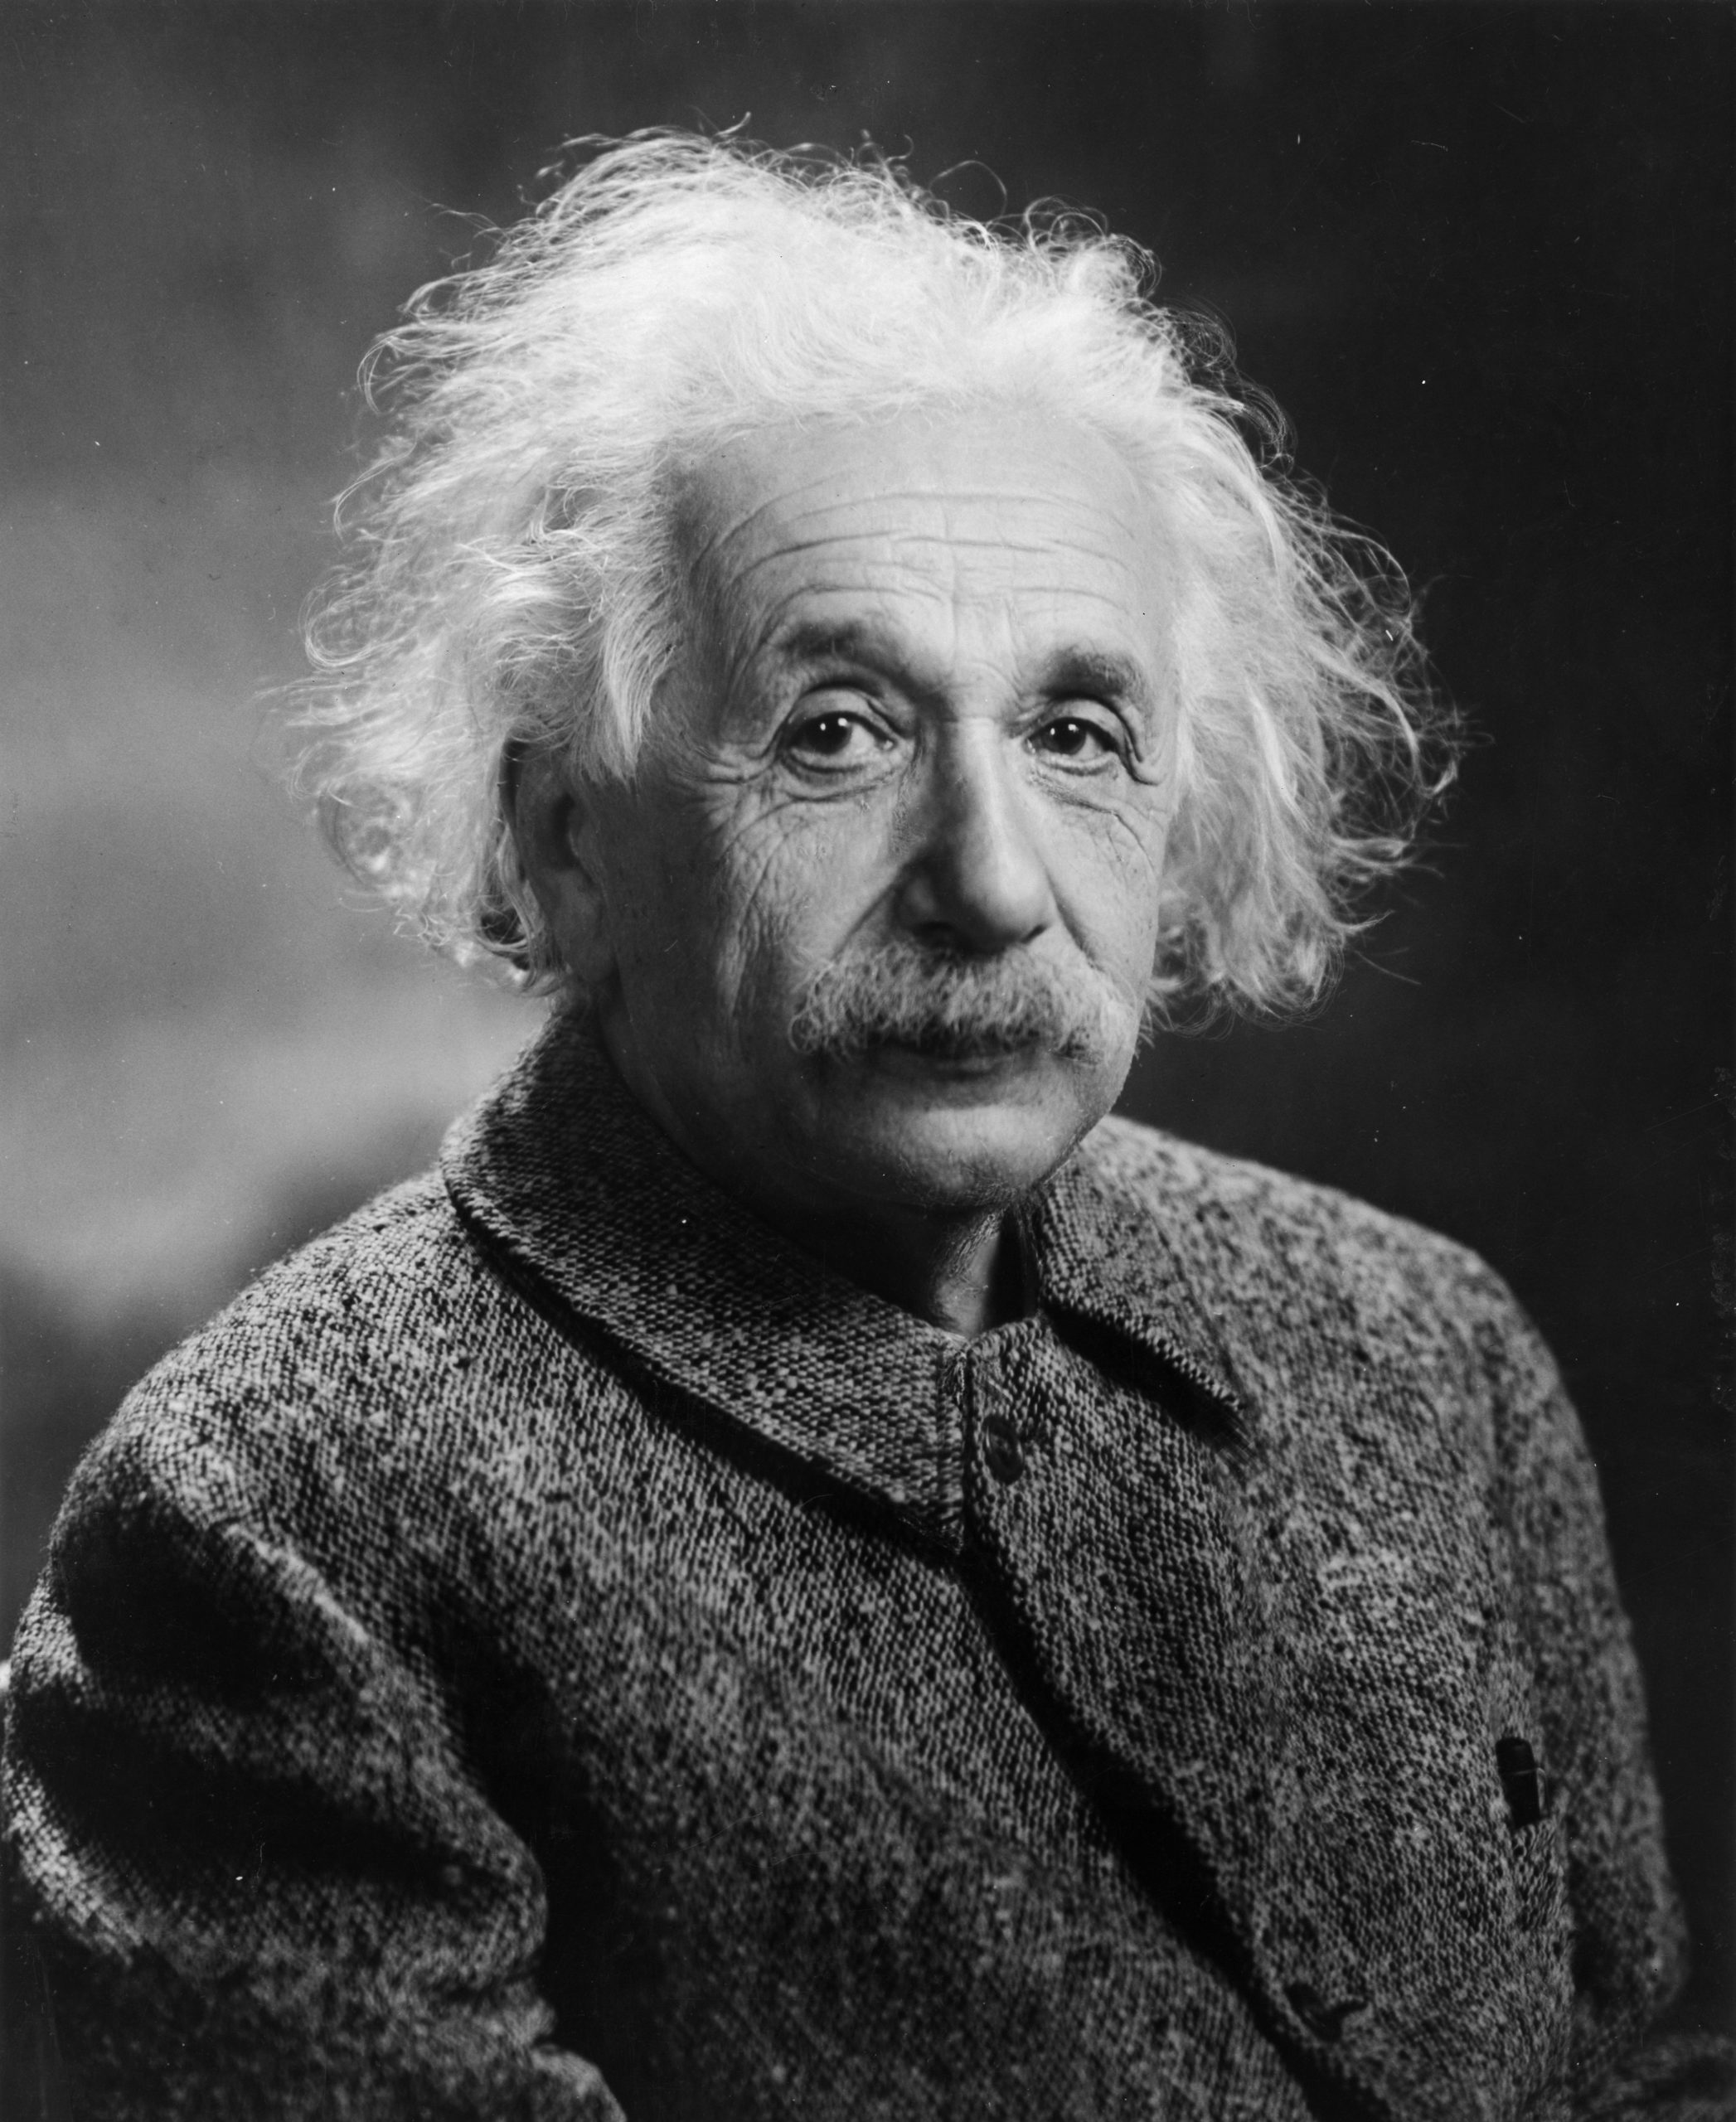 Albert Einstein, 1879-1955